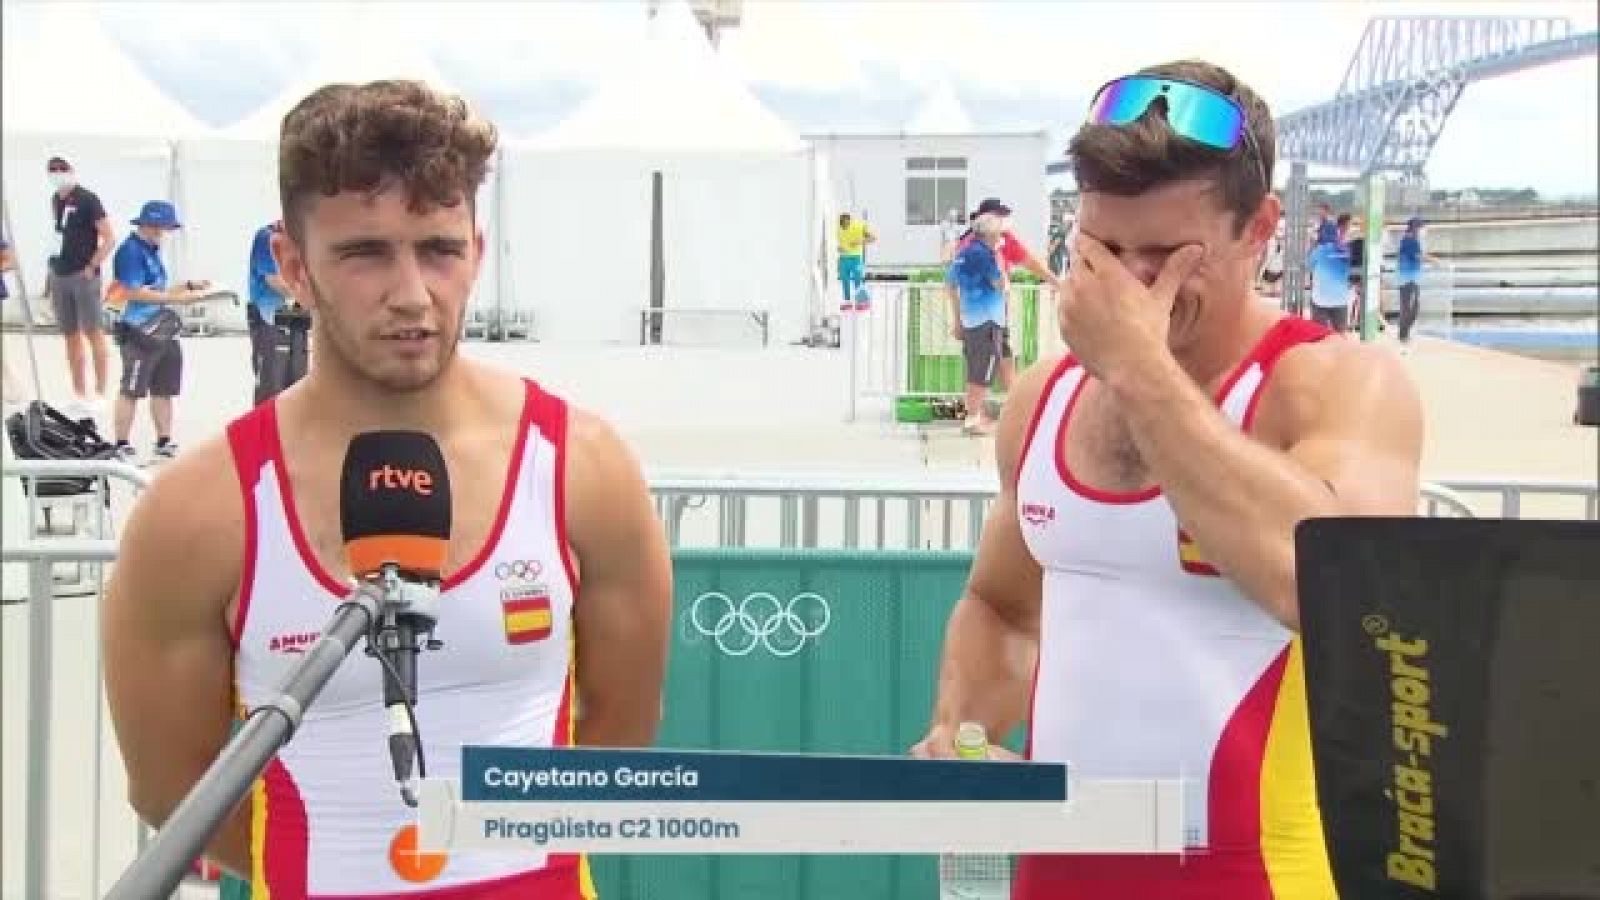 Cayetano García y Pablo Martínez: "Nuestro sueño es entrar en una final olímpica" - Ver ahora